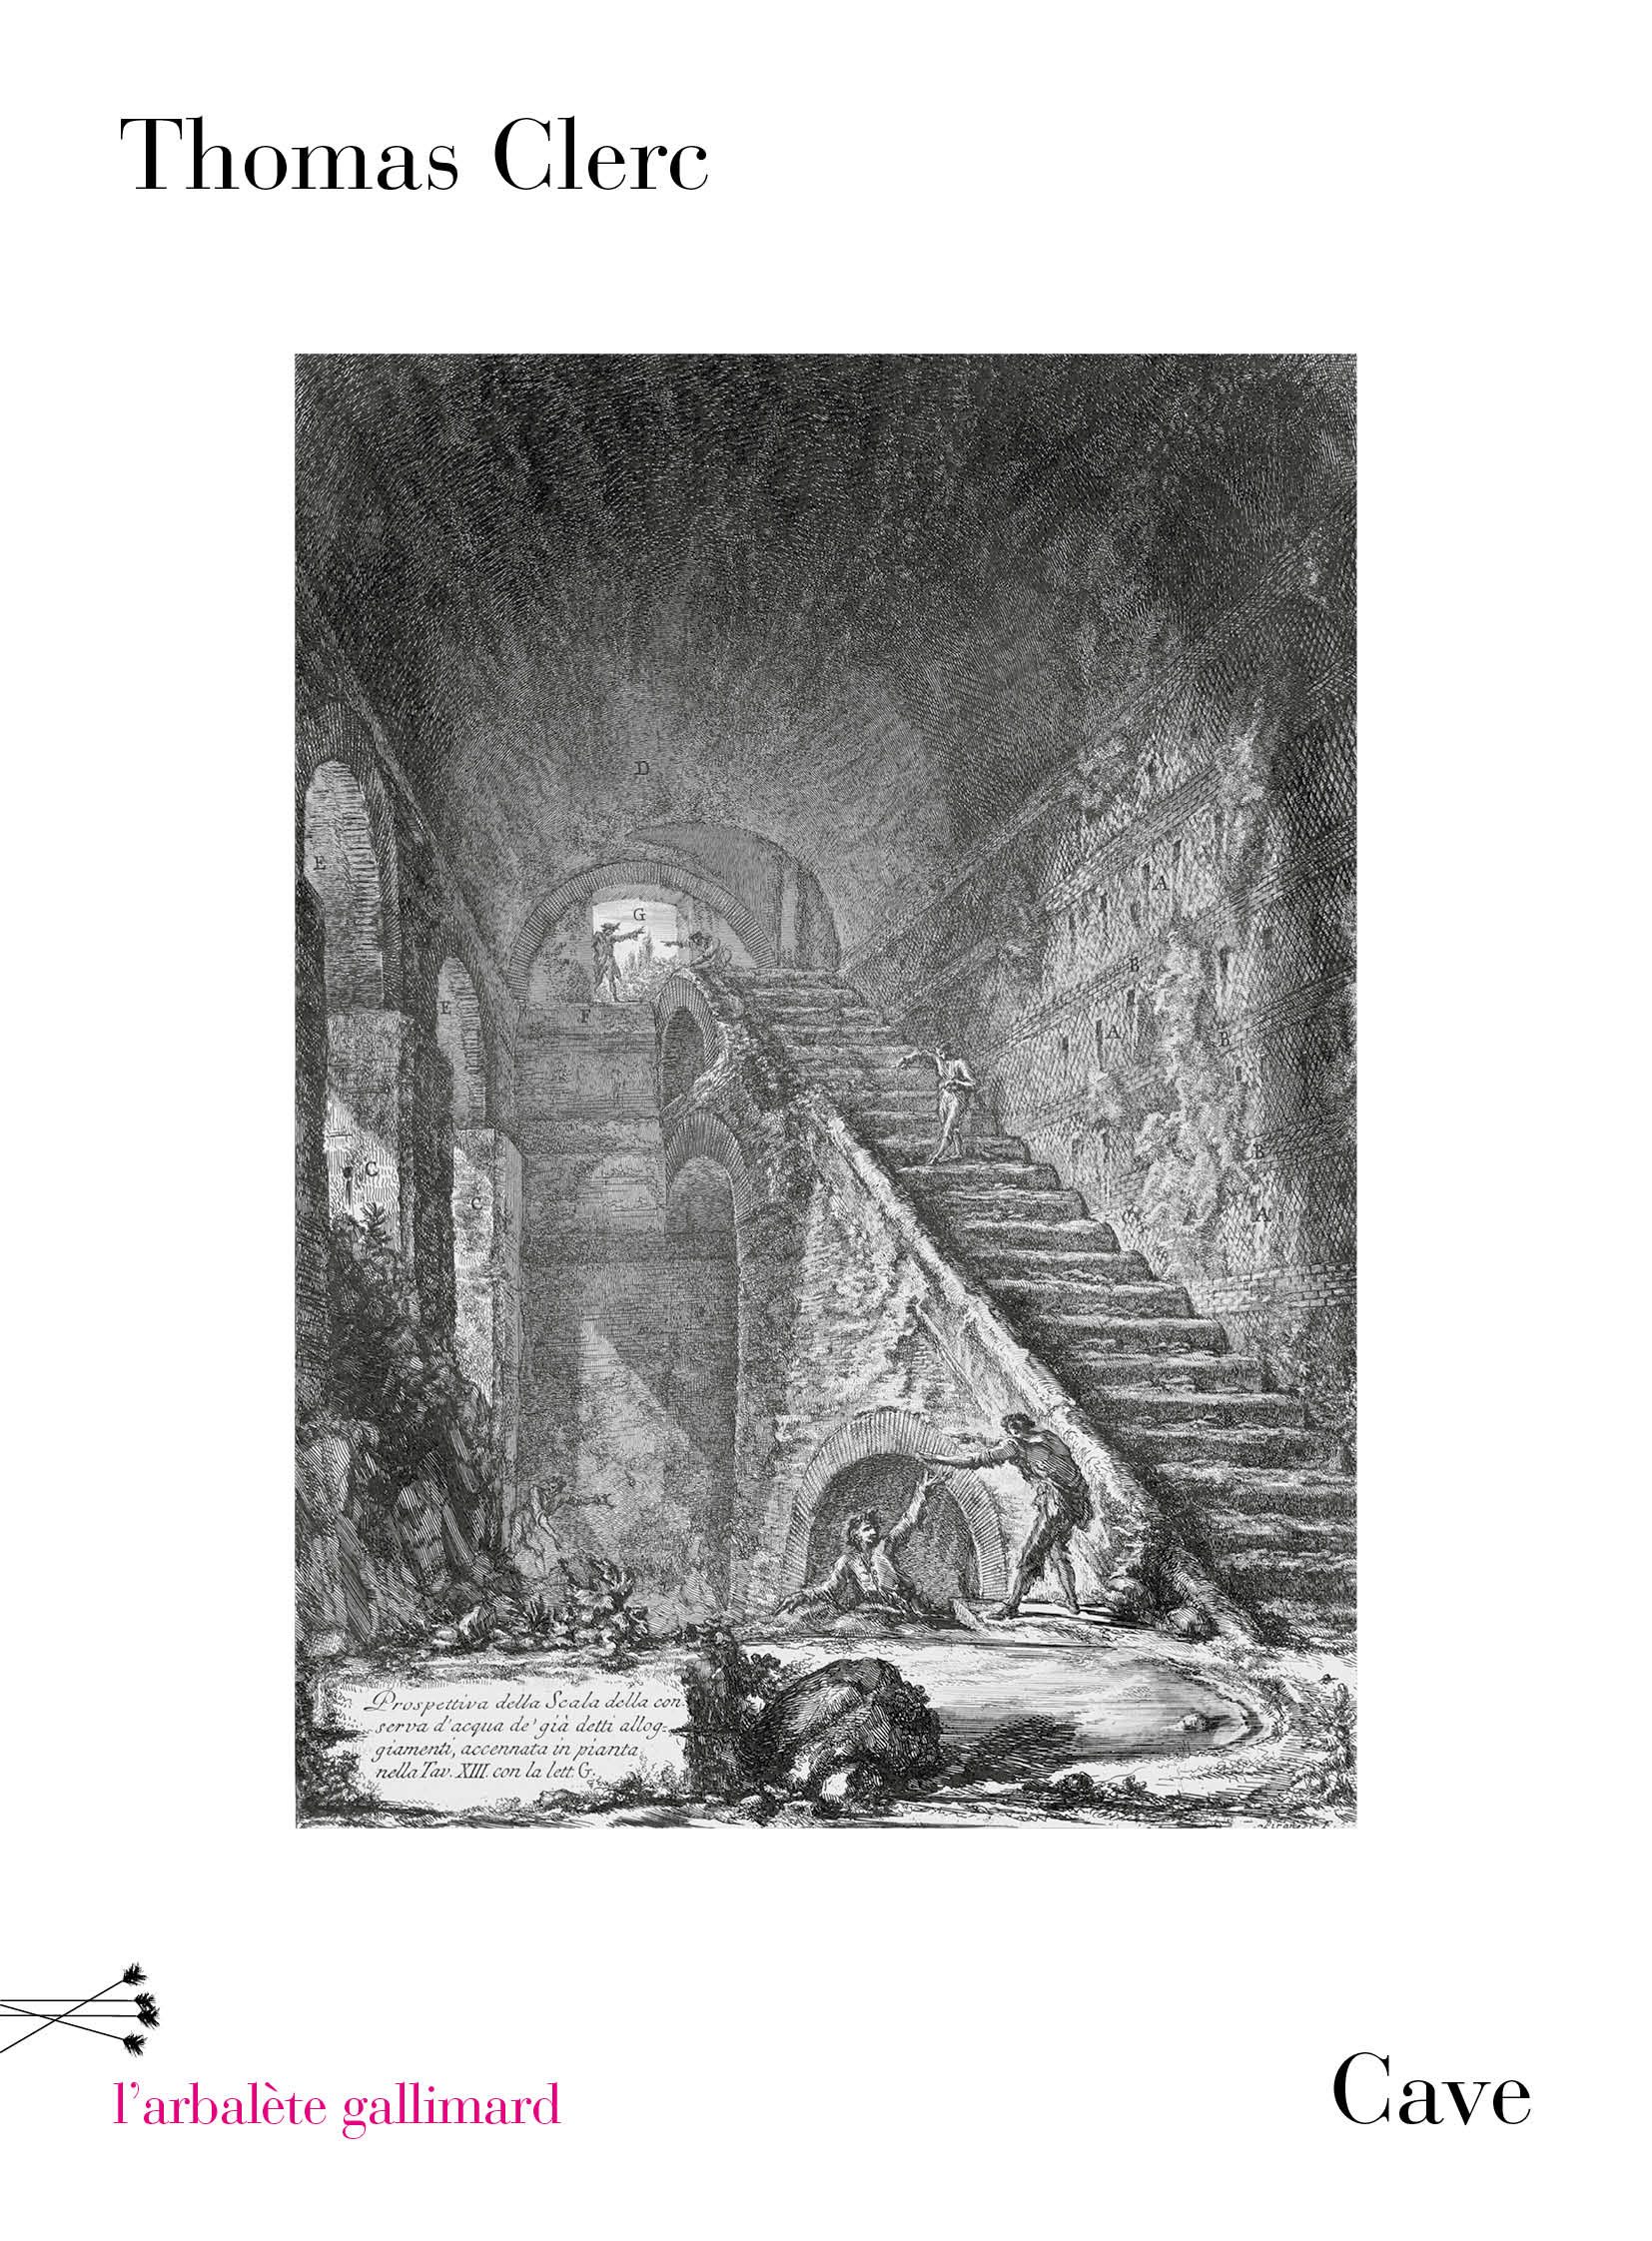 Couverture de “Cave” de Thomas Clerc / Portraits de Thomas Clerc par  Francesca Mantovani pour les Editions Gallimard